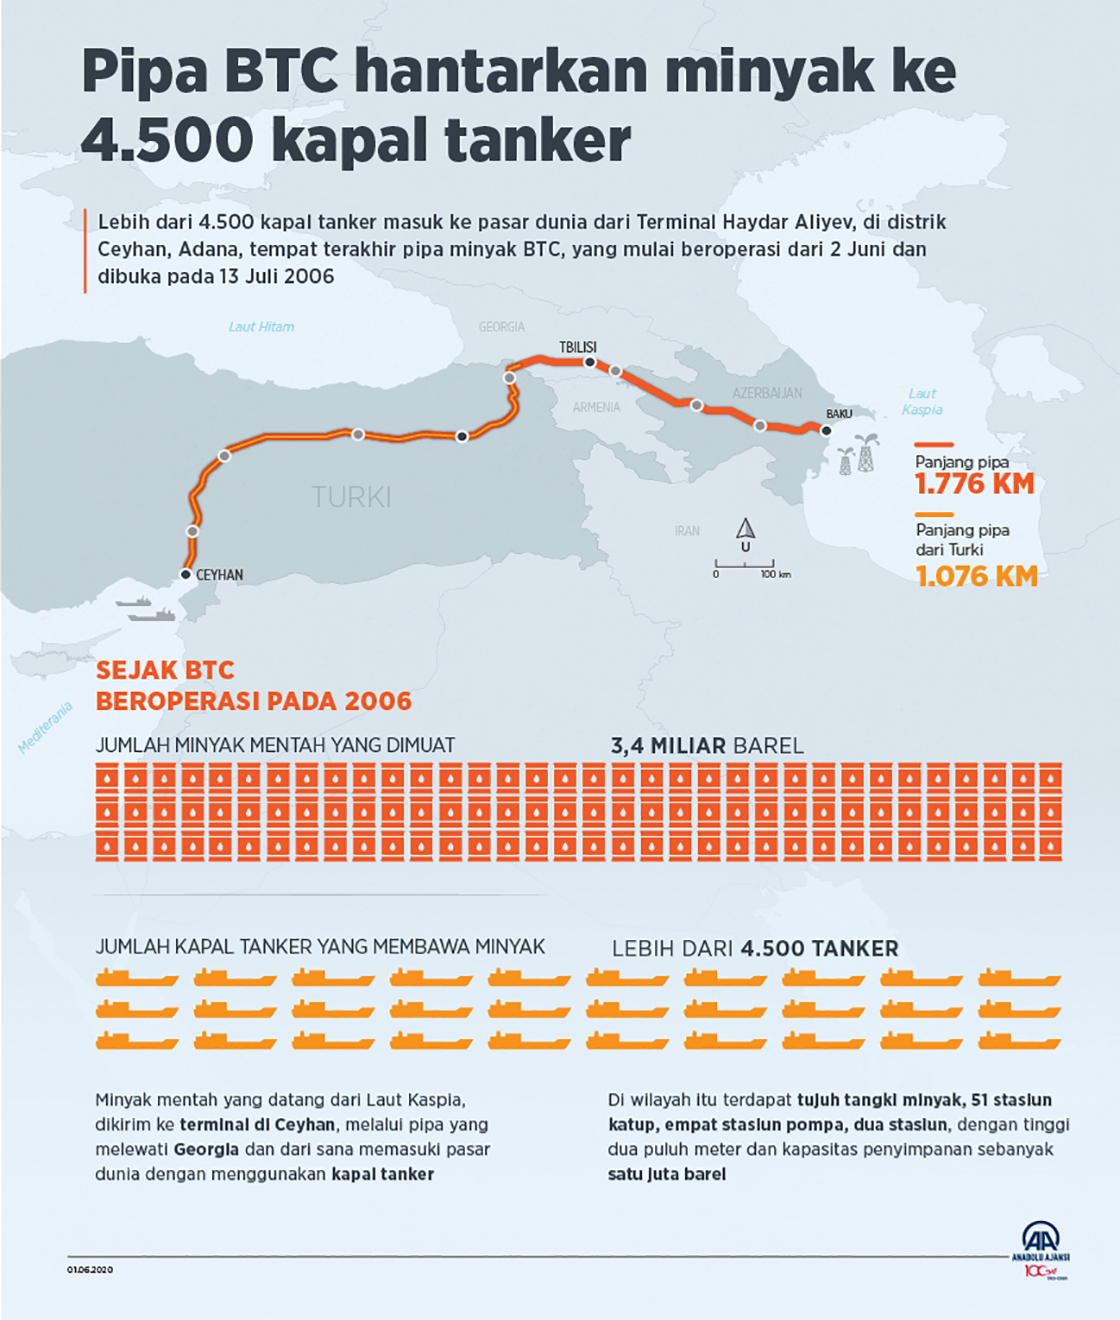 Pipa BTC hantarkan minyak ke 4.500 kapal tanker 